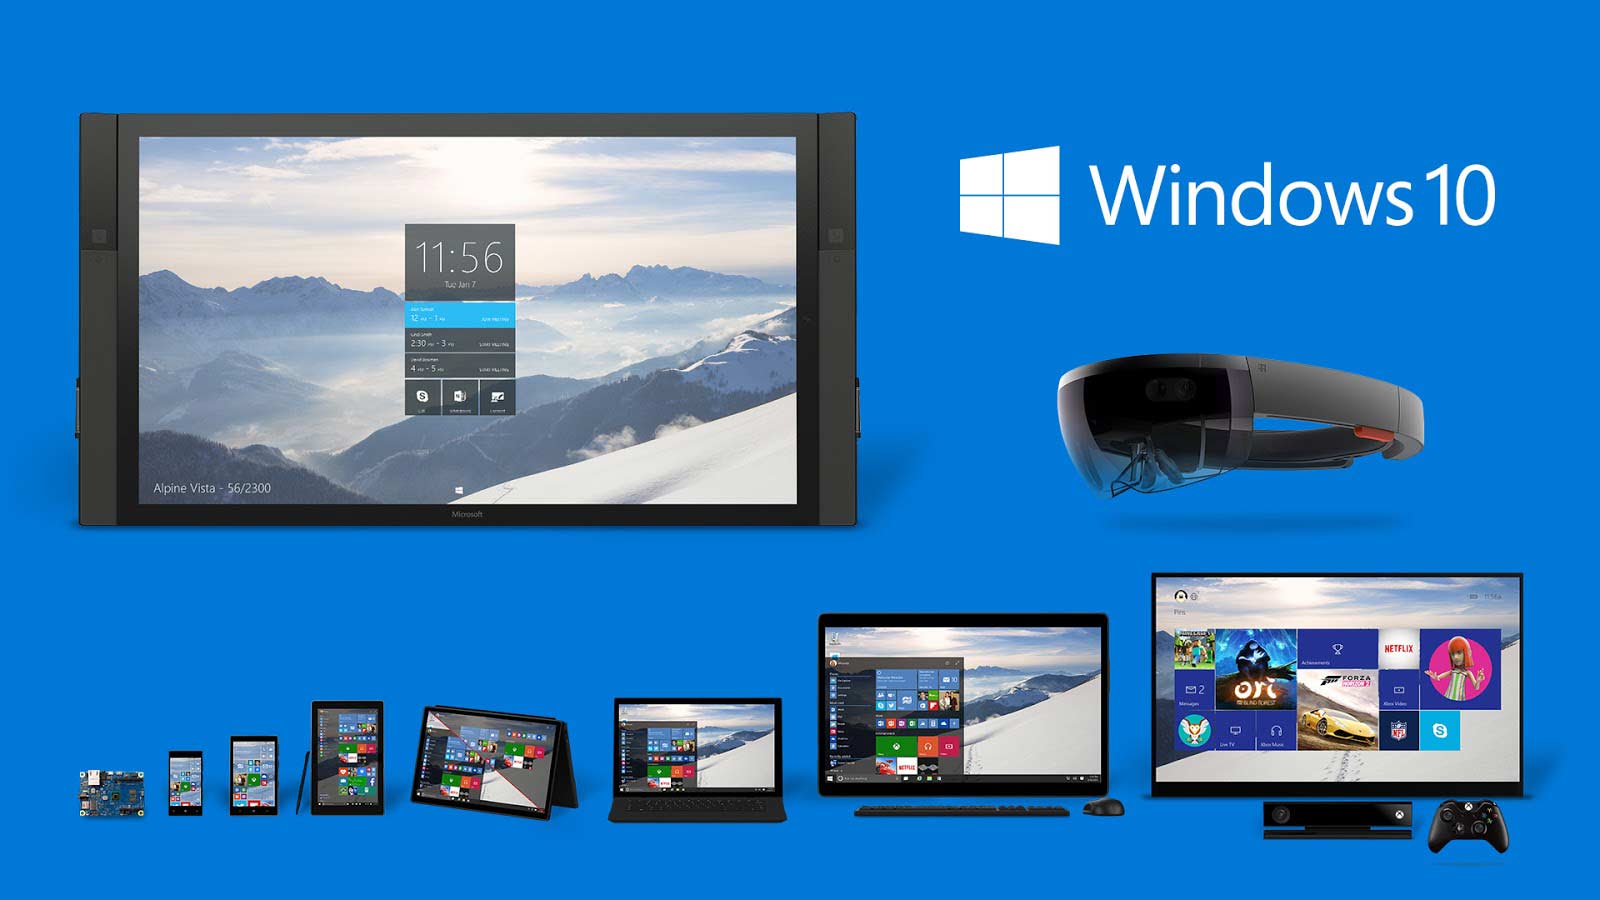 Kelebihan Windows 10 ialah kemampuannya dalam menghubungkan PC dengan banyak gawai